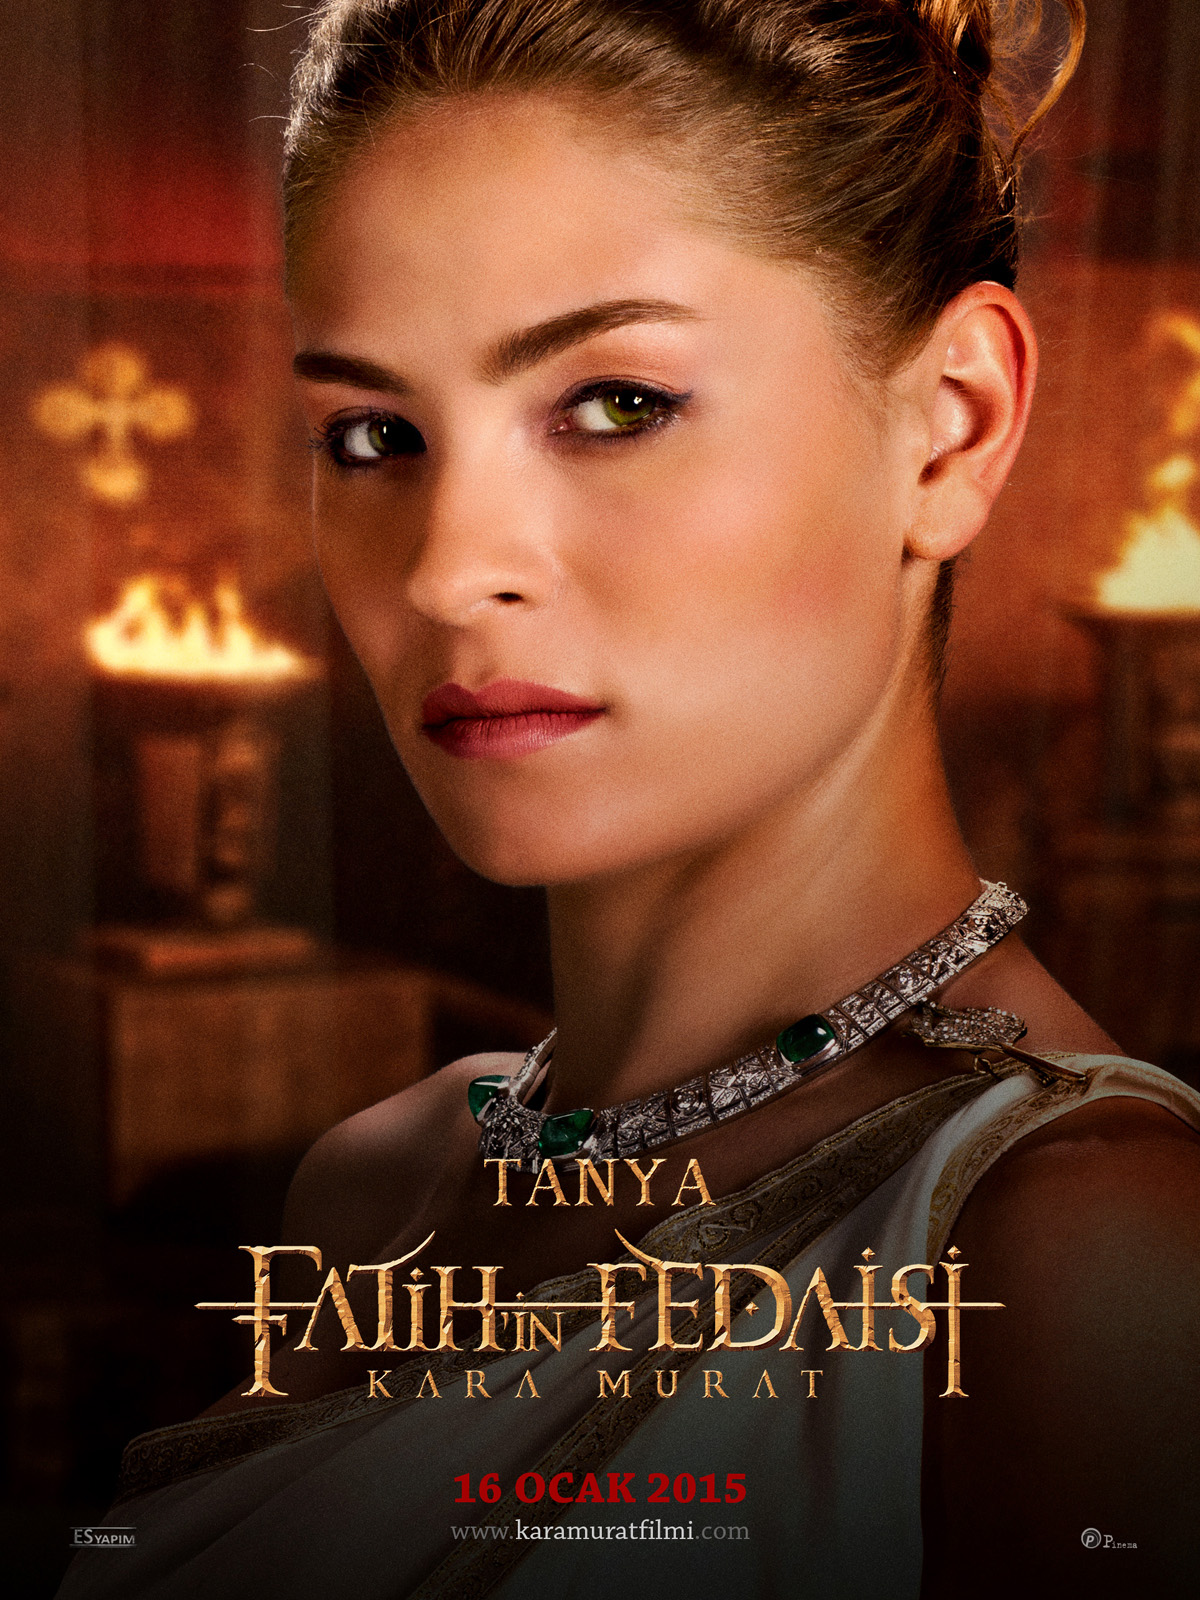 Fatih'in Fedaisi Kara Murat (2015) Poster #2